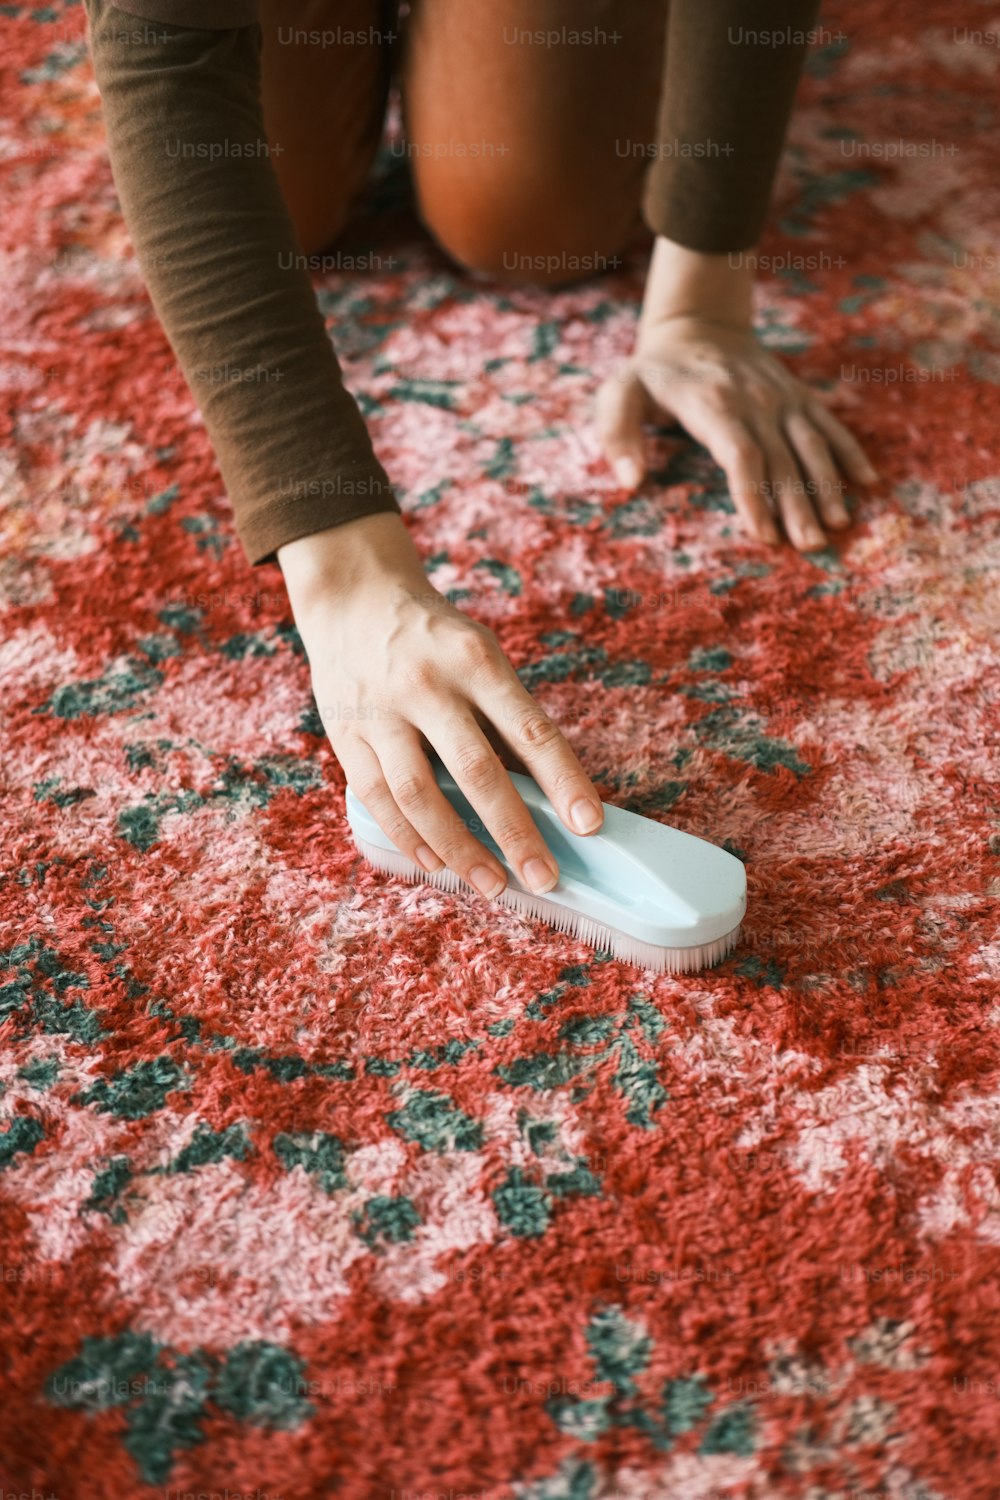 una persona arrodillada sobre una alfombra con un cepillo en la mano